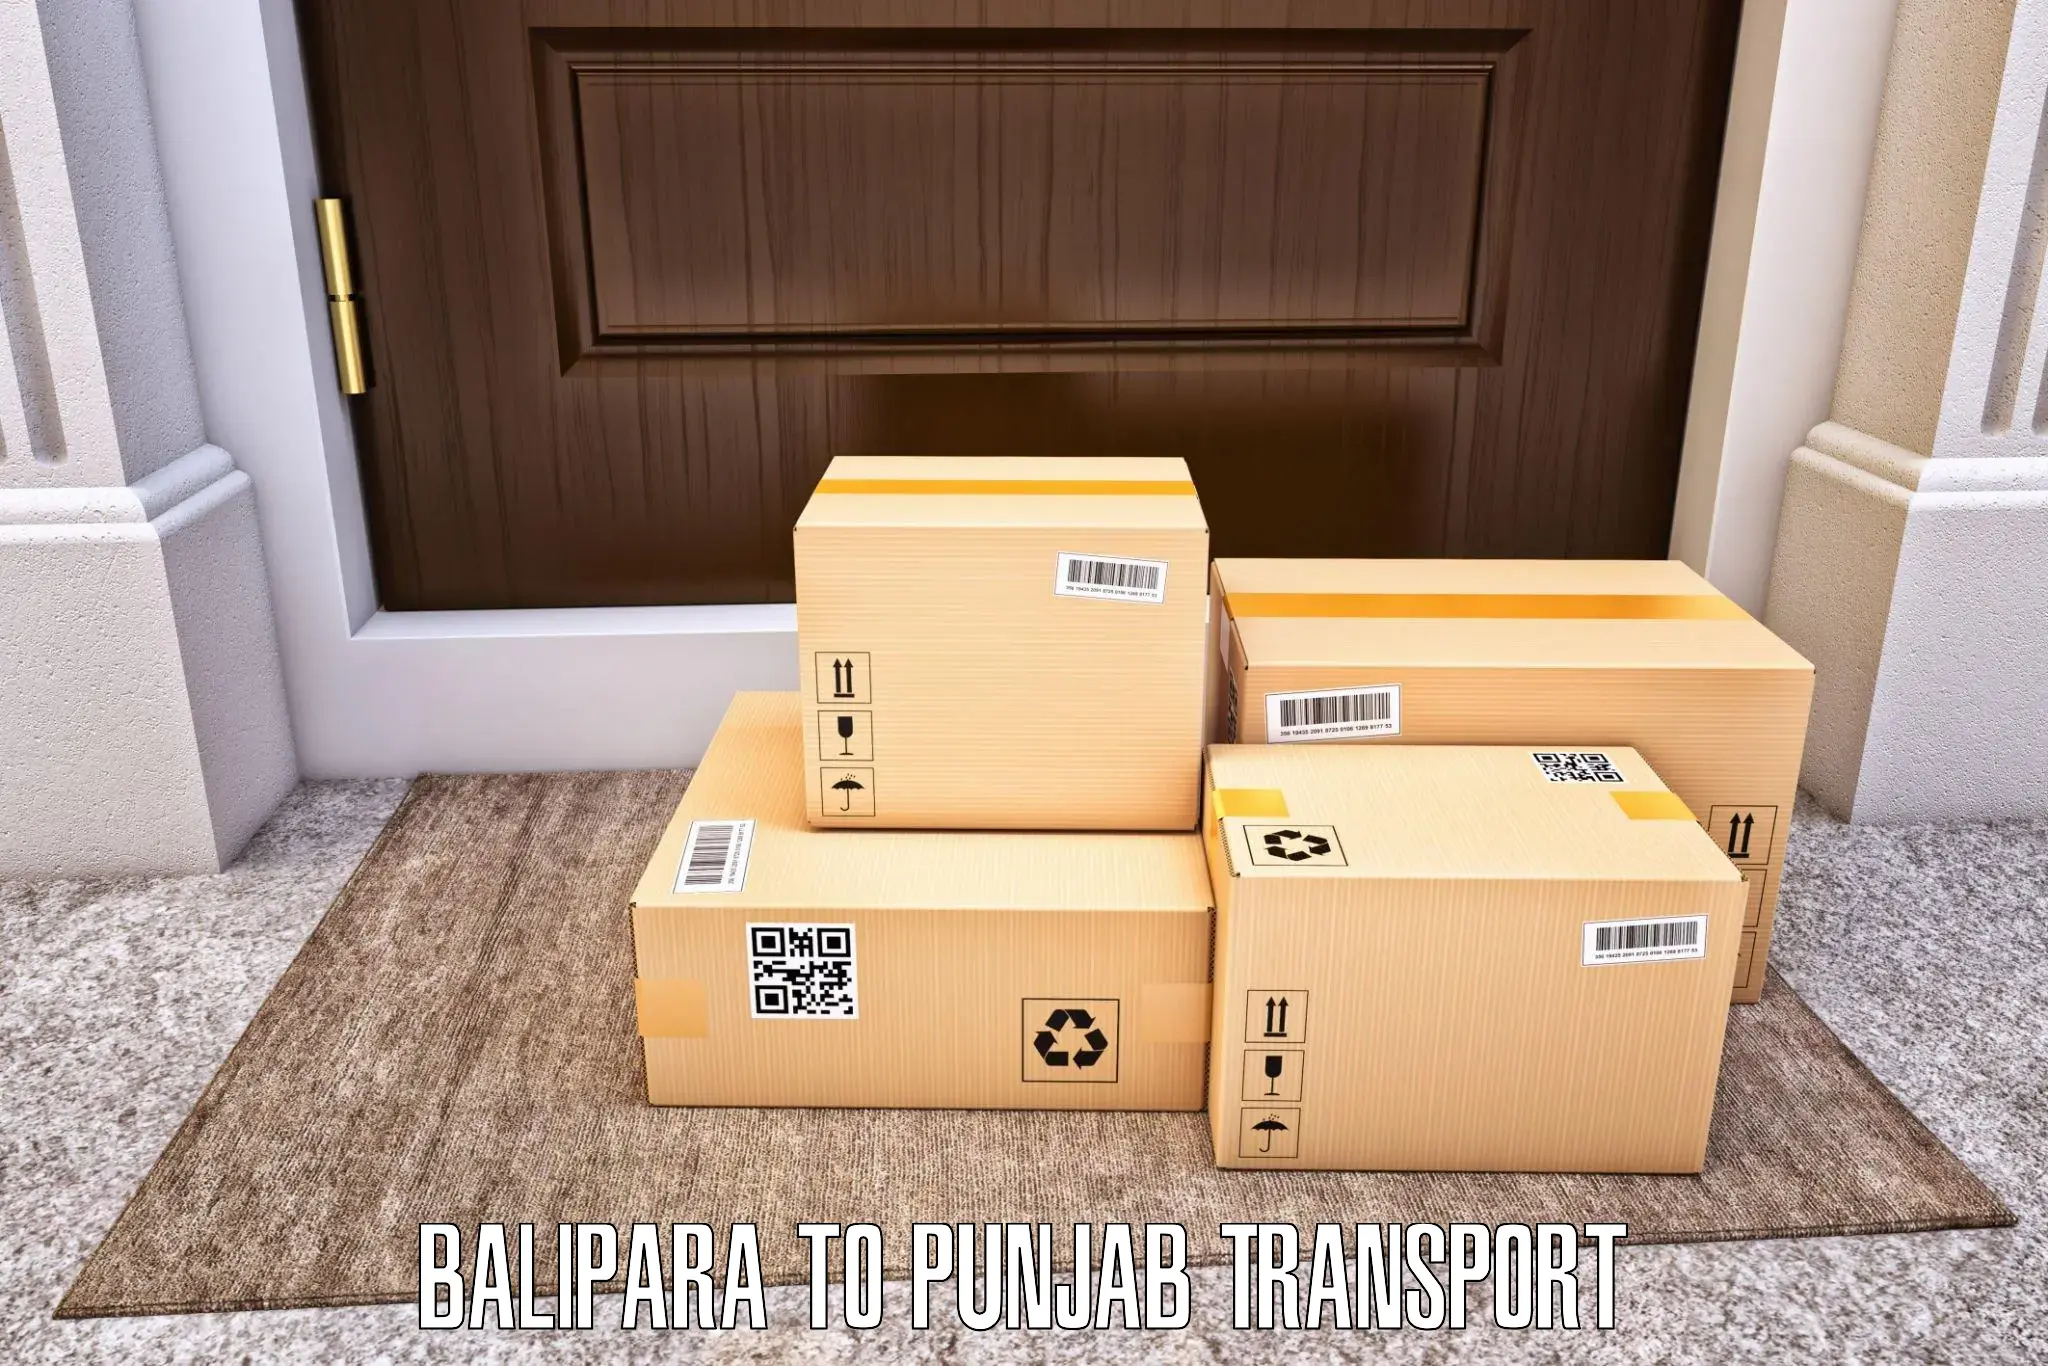 Intercity transport Balipara to Ludhiana